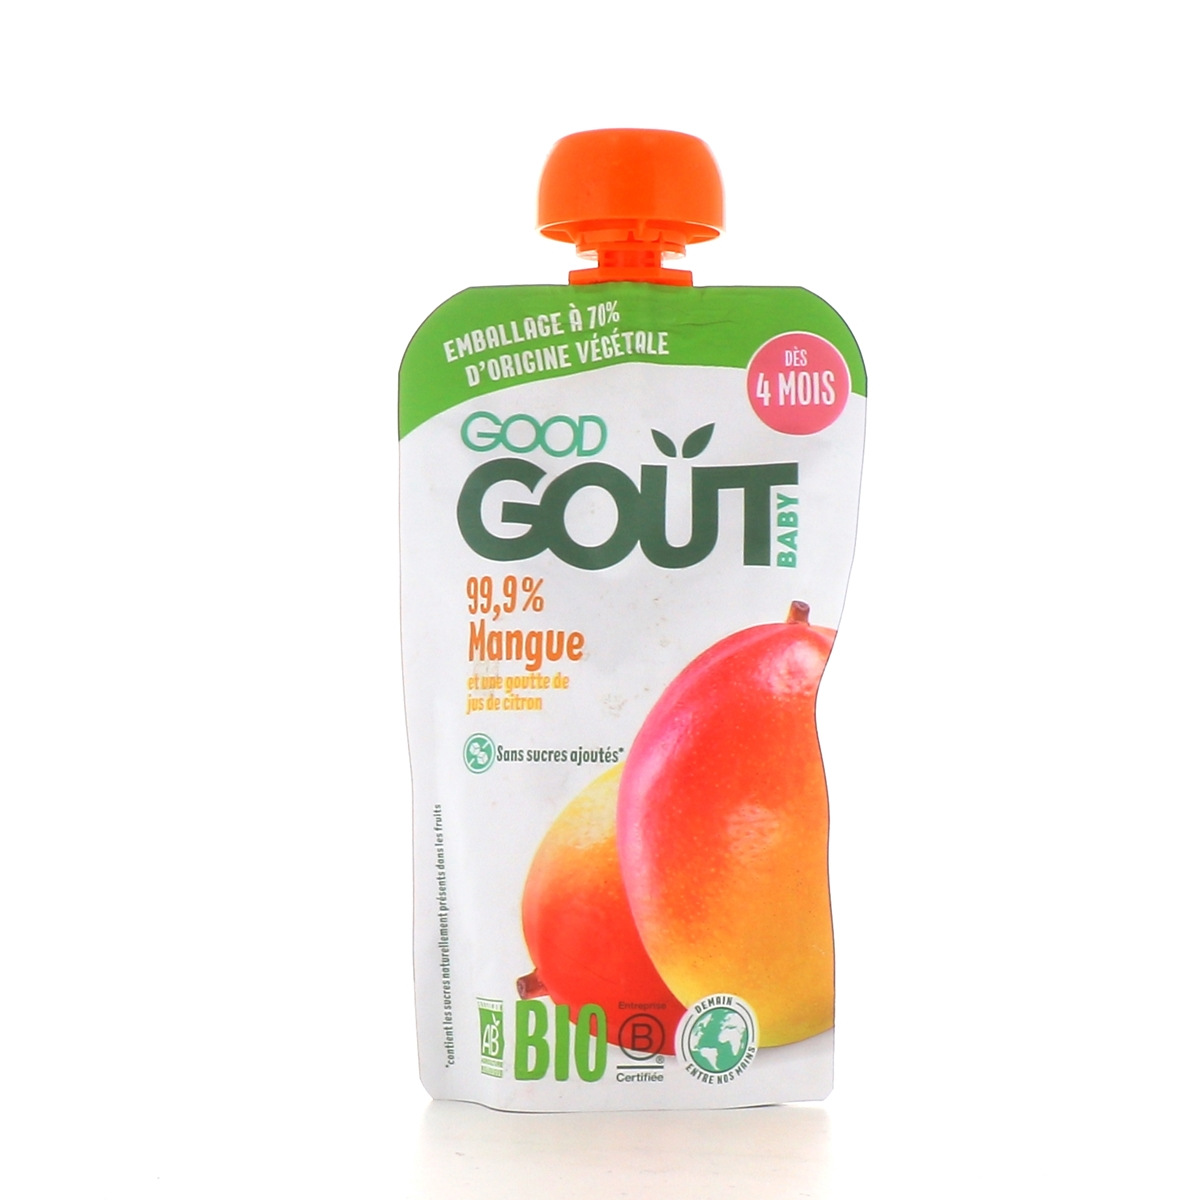 Good Goût Compote Prune Bio - Purée de fruits pour bébé - Dès 4 mois